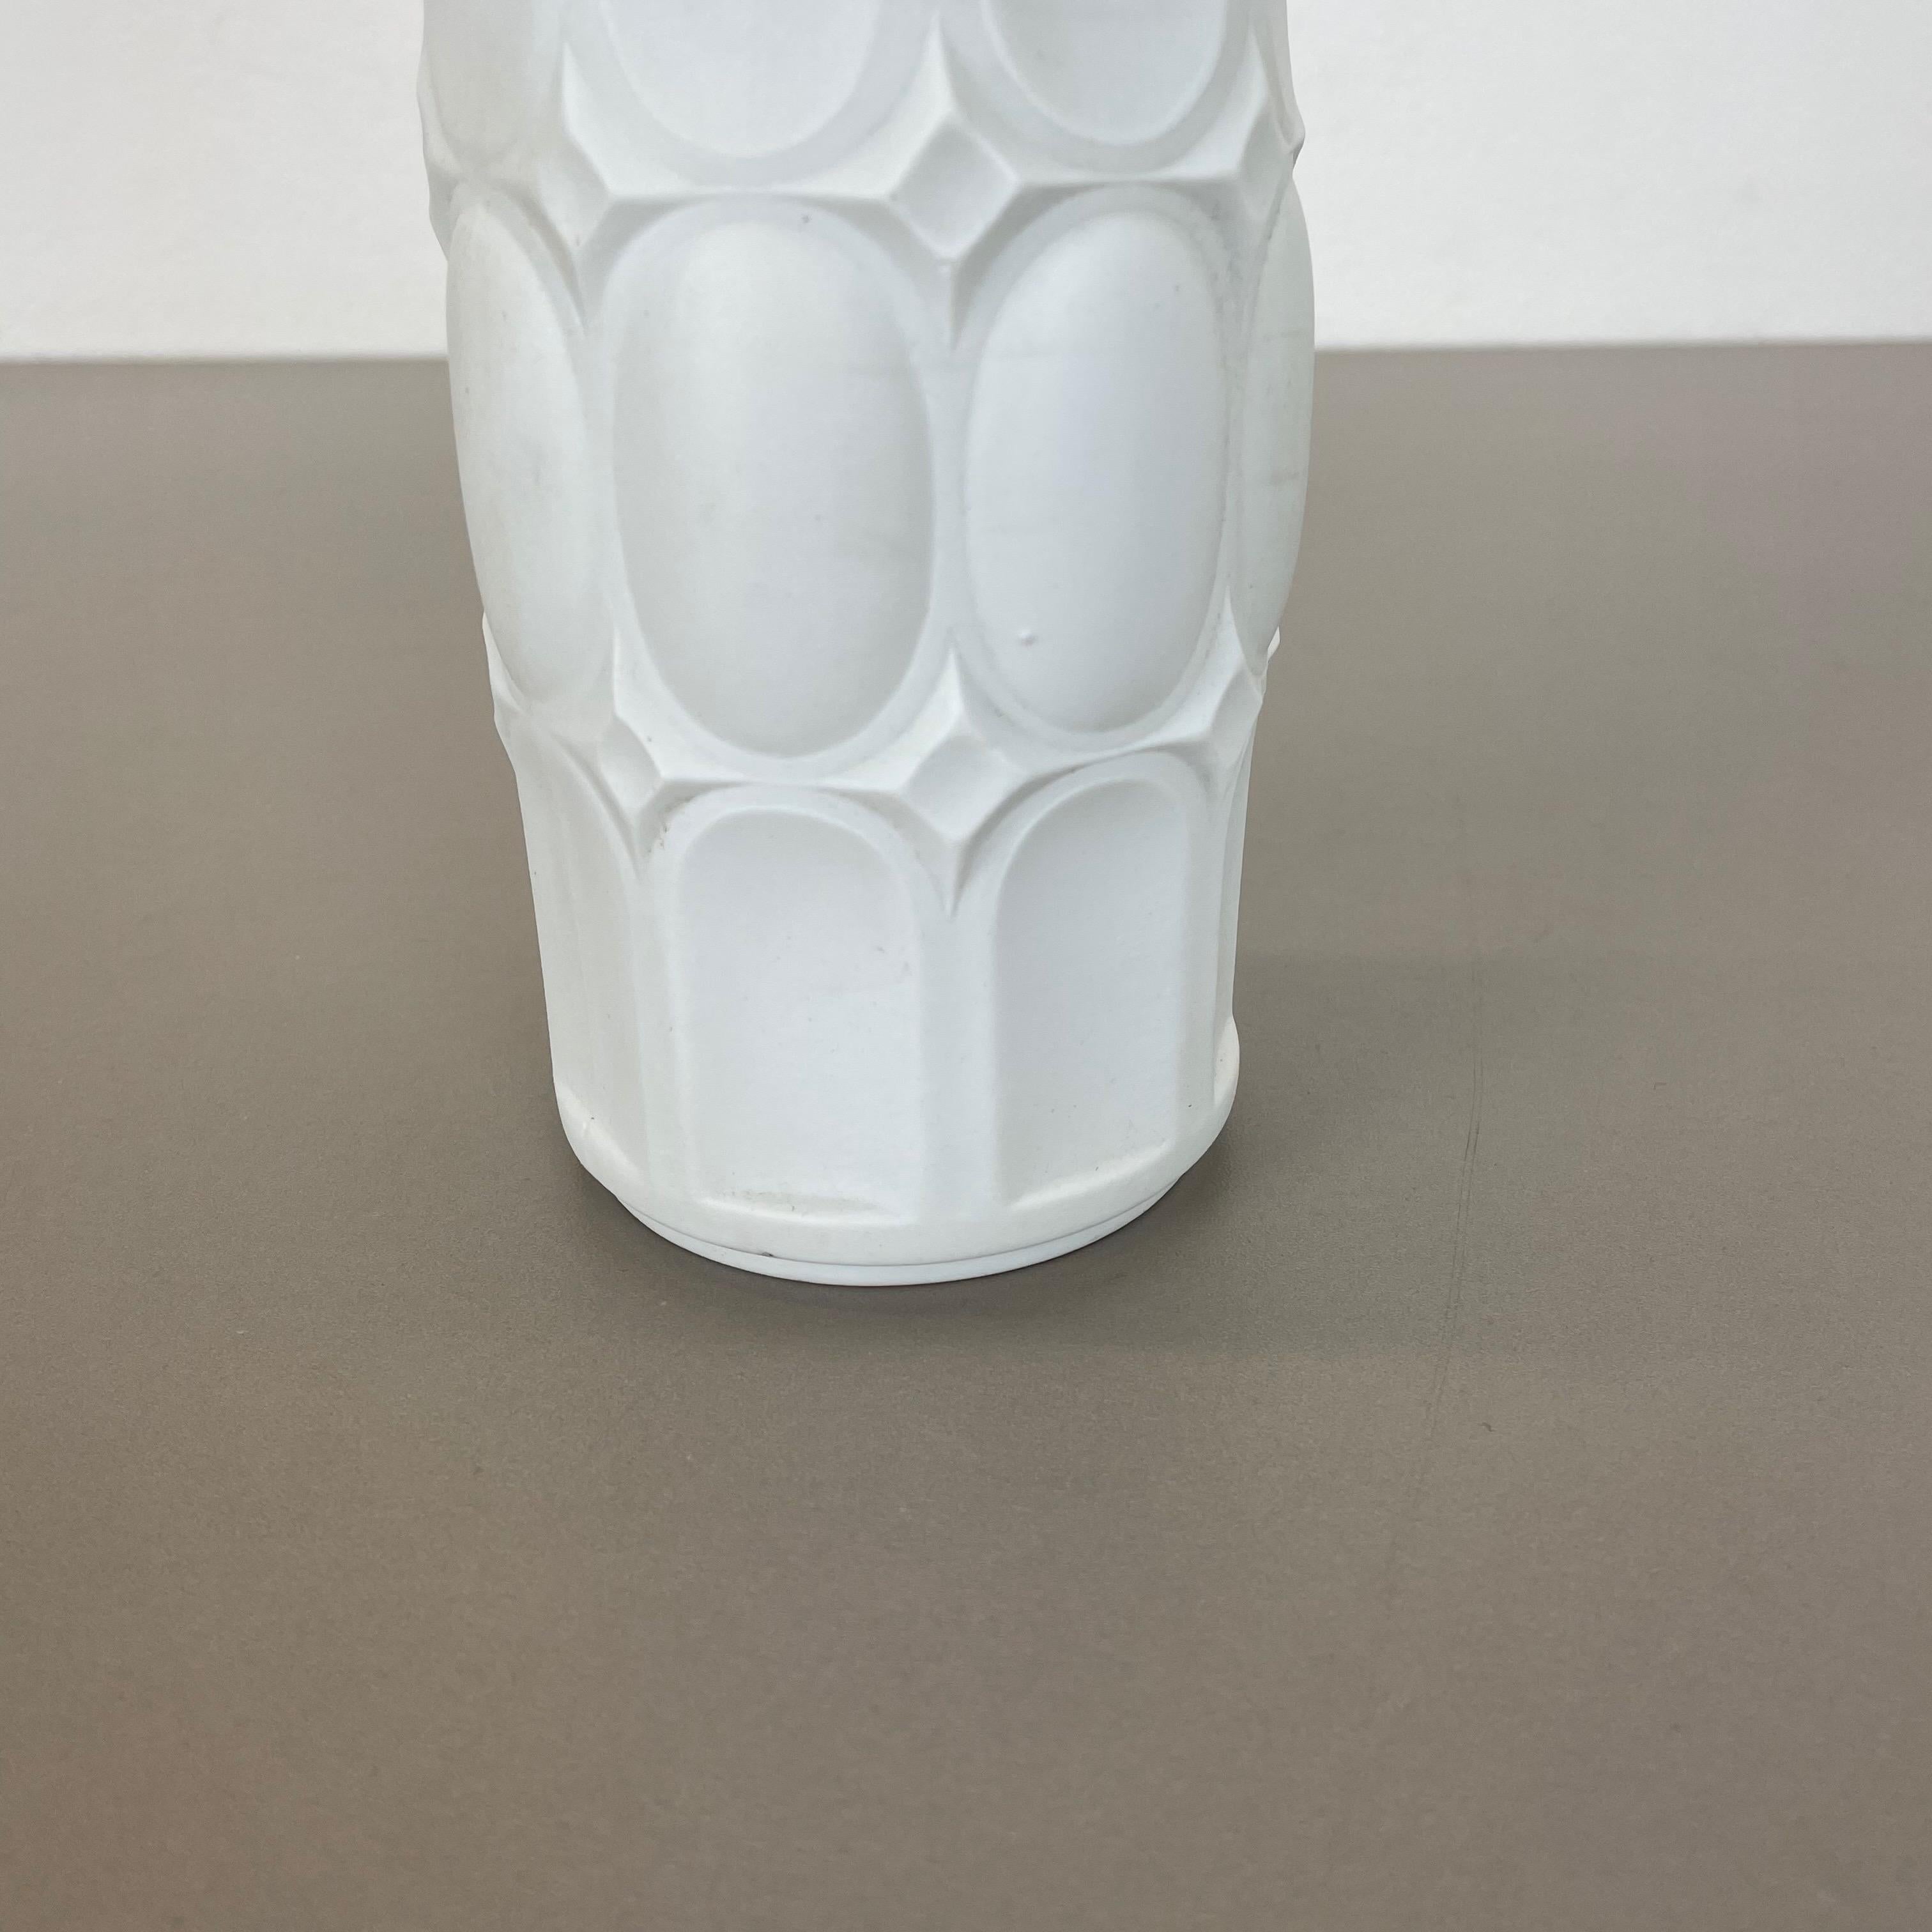 20th Century Original Large Porcelain OP Art Vase Made by Royal Bavaria KPM, Germany, 1970s For Sale